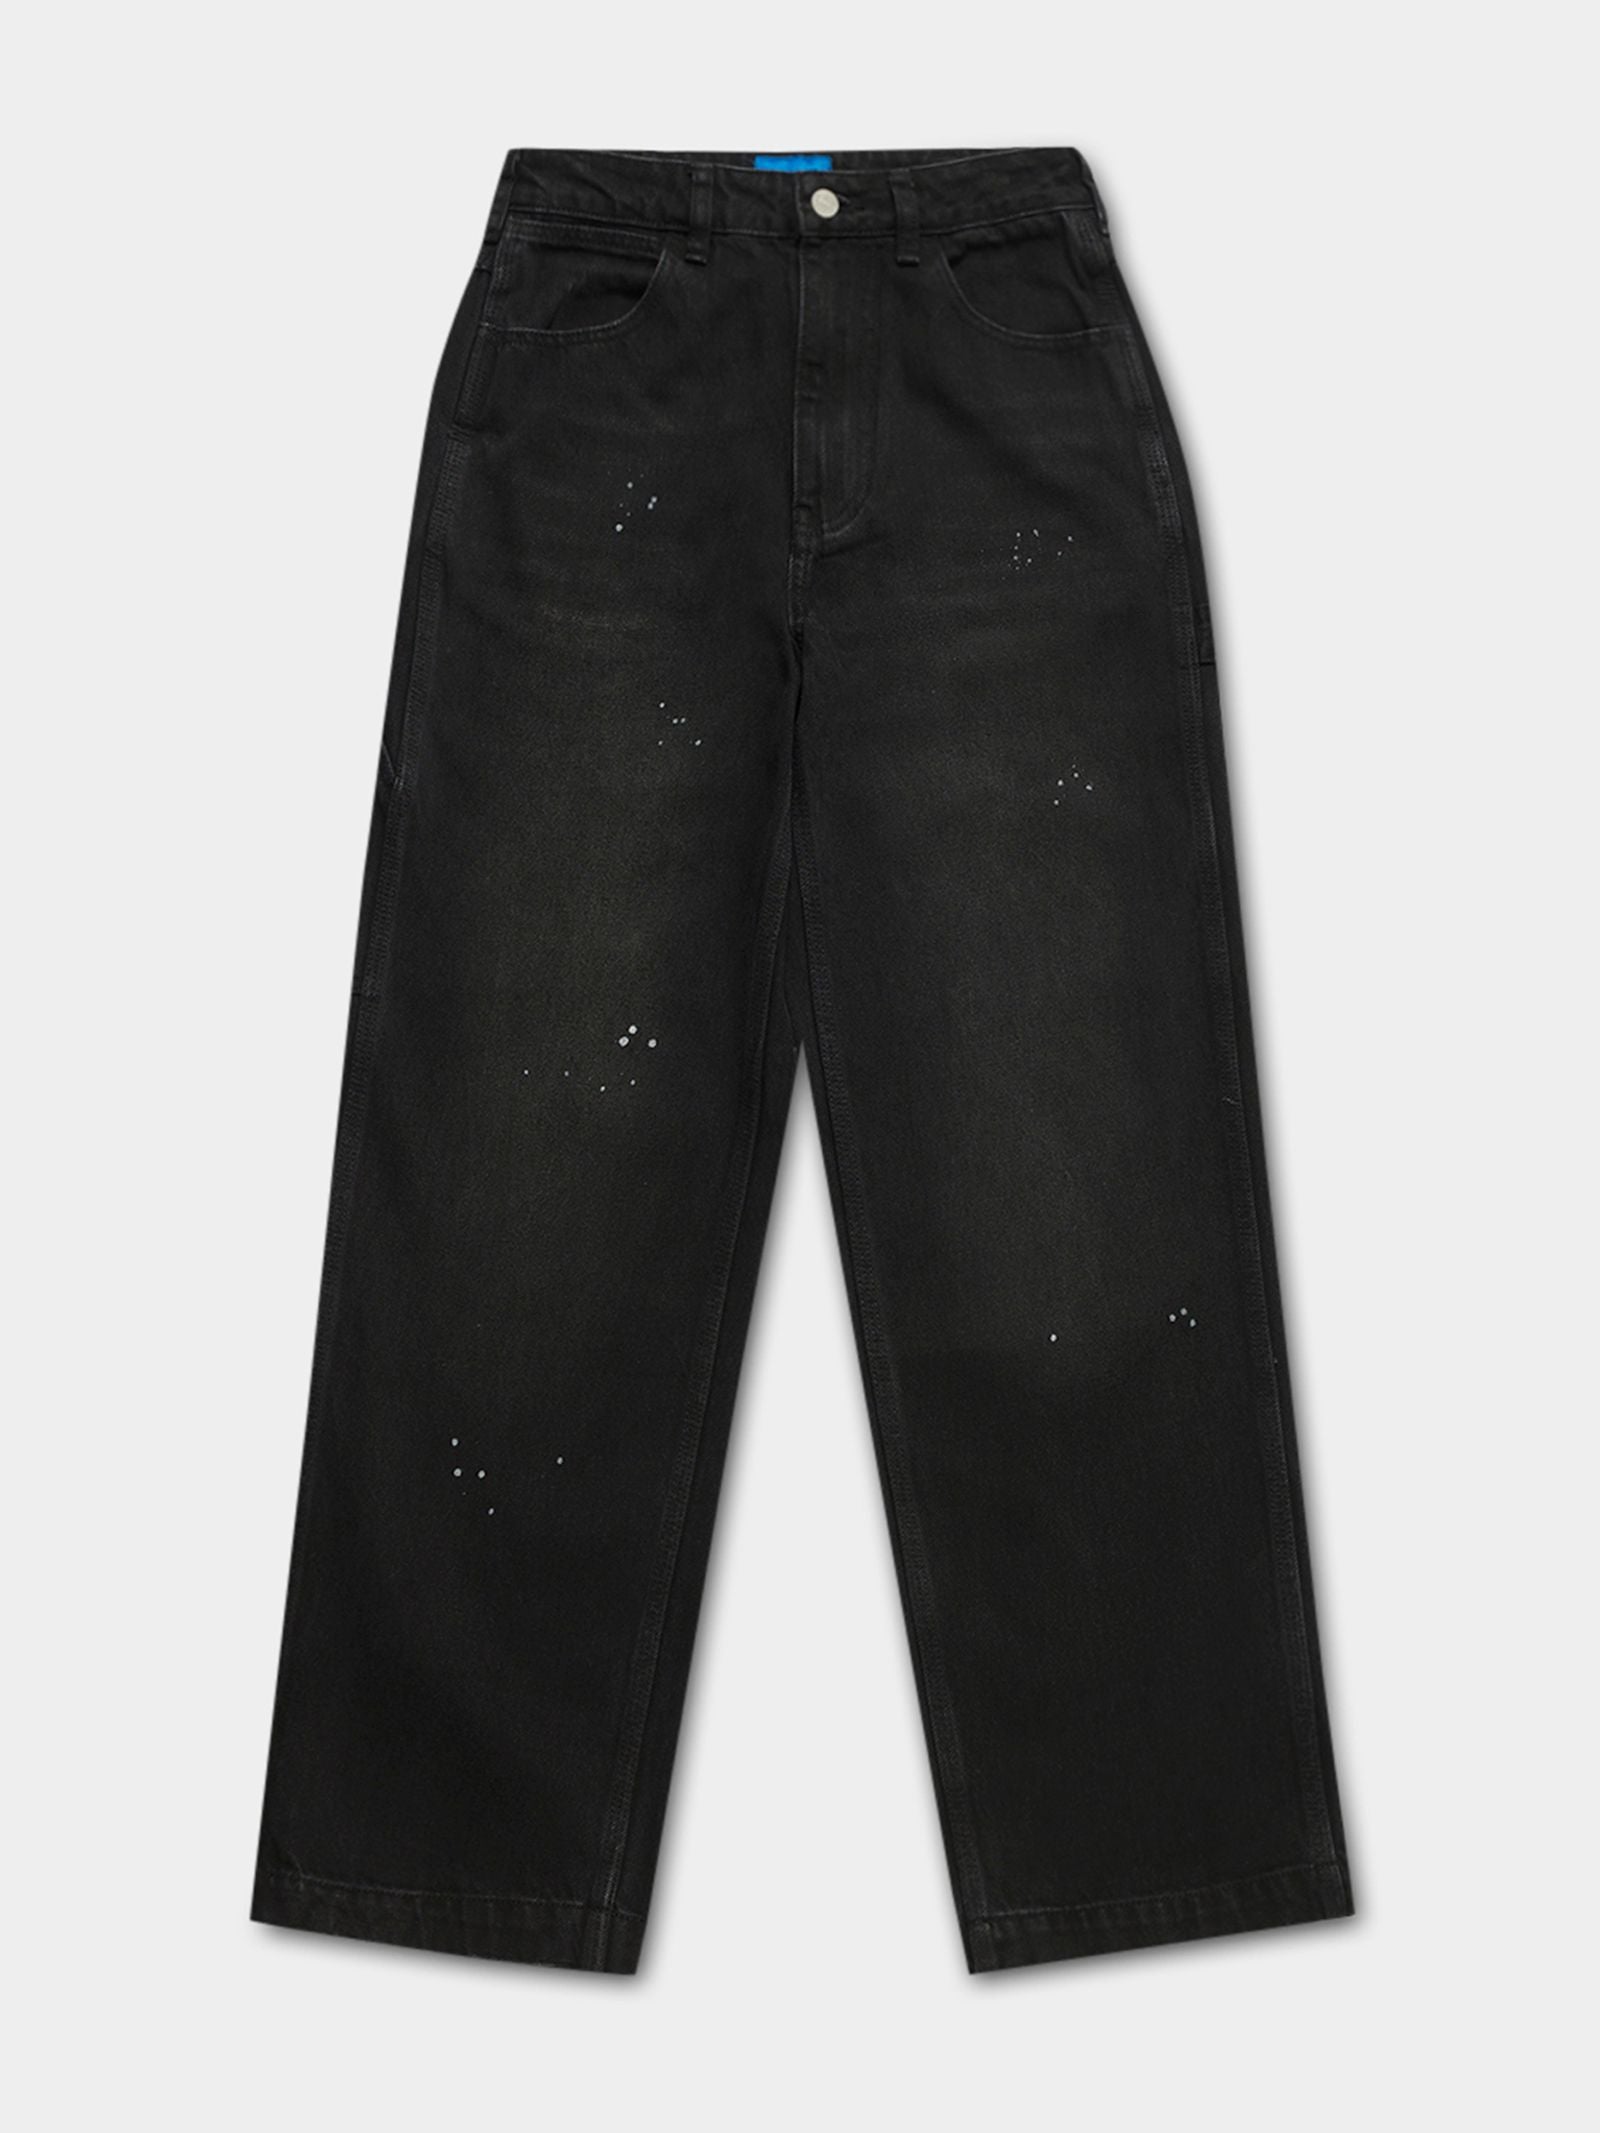 Dickies Faded Black Carpenter Pants [33 x 30]